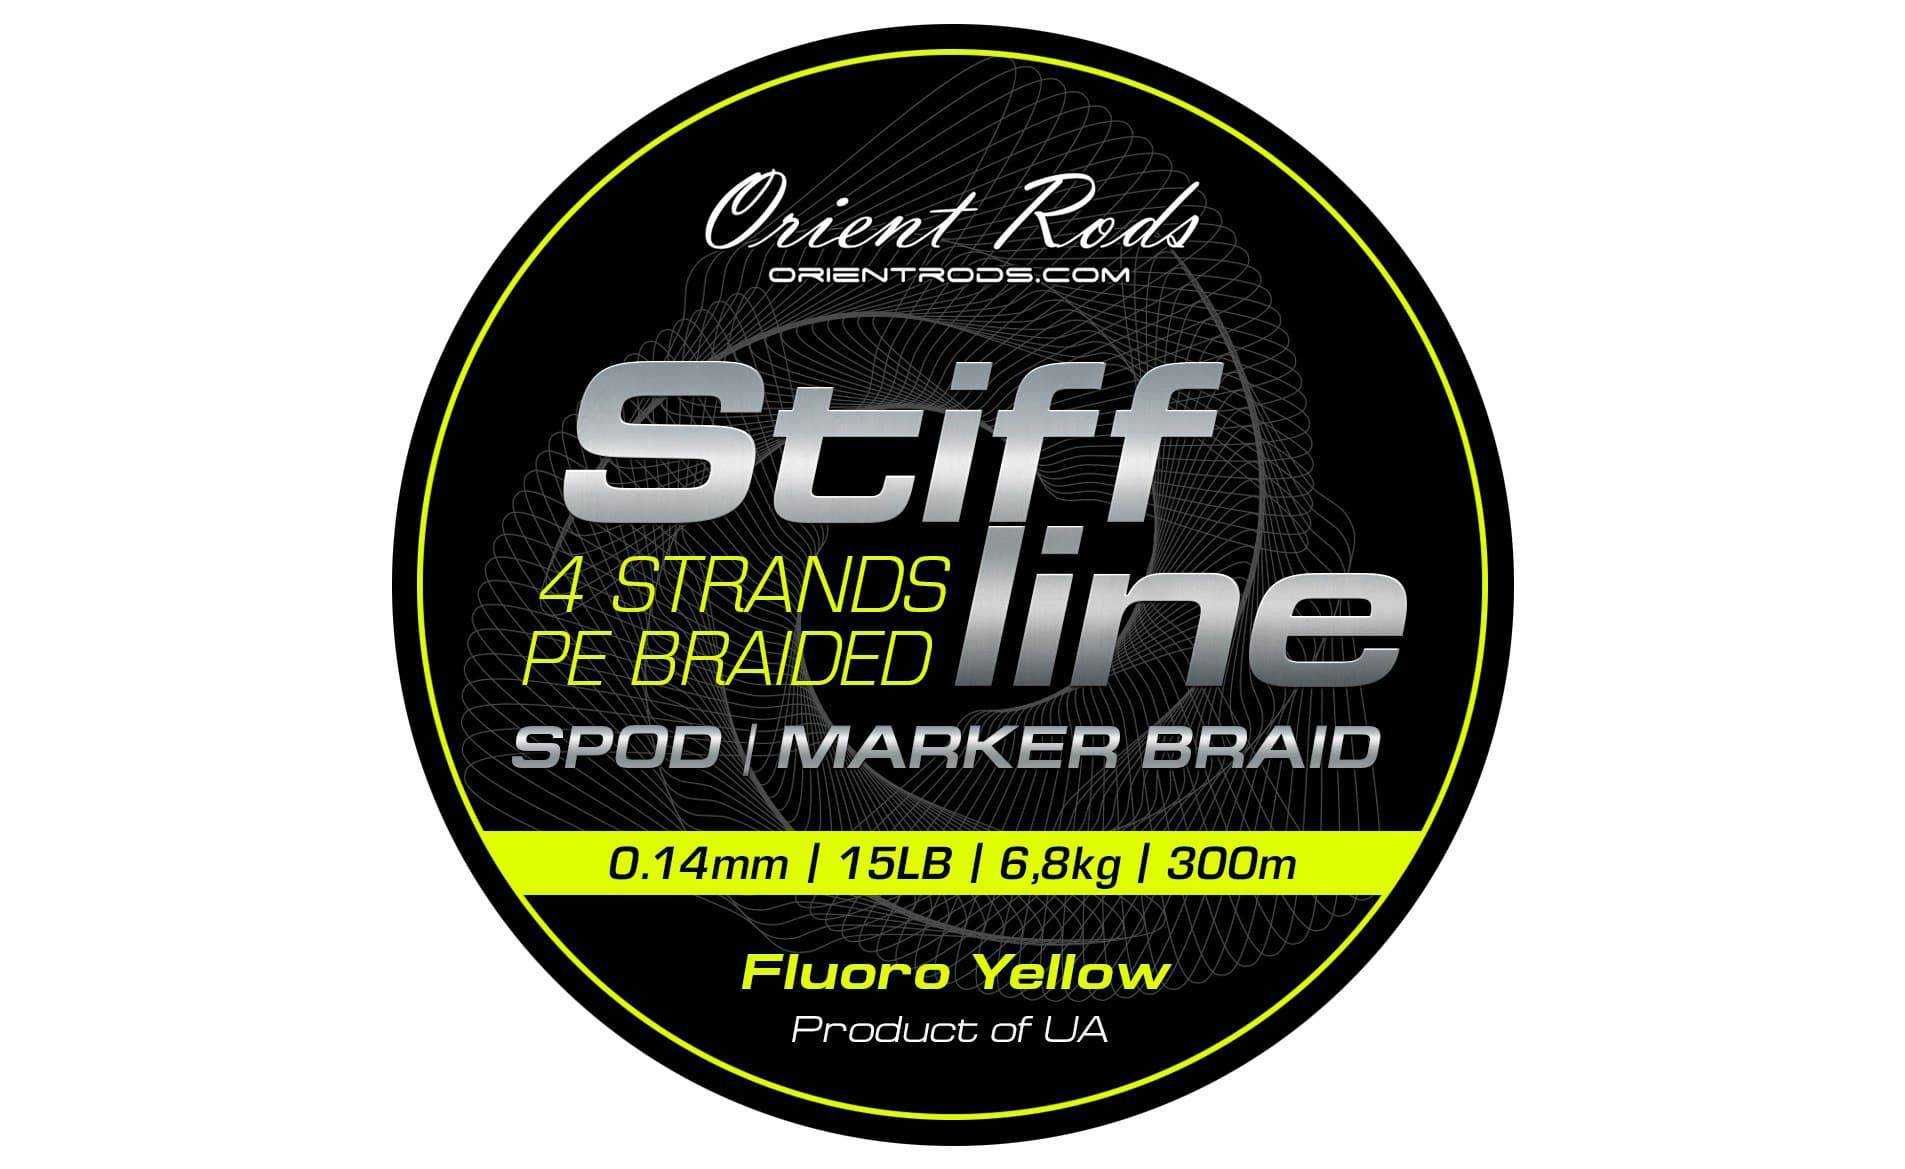 Karpiowa plecionka Orient Rods Stiff Line Spod/Marker Braid 0,14mm